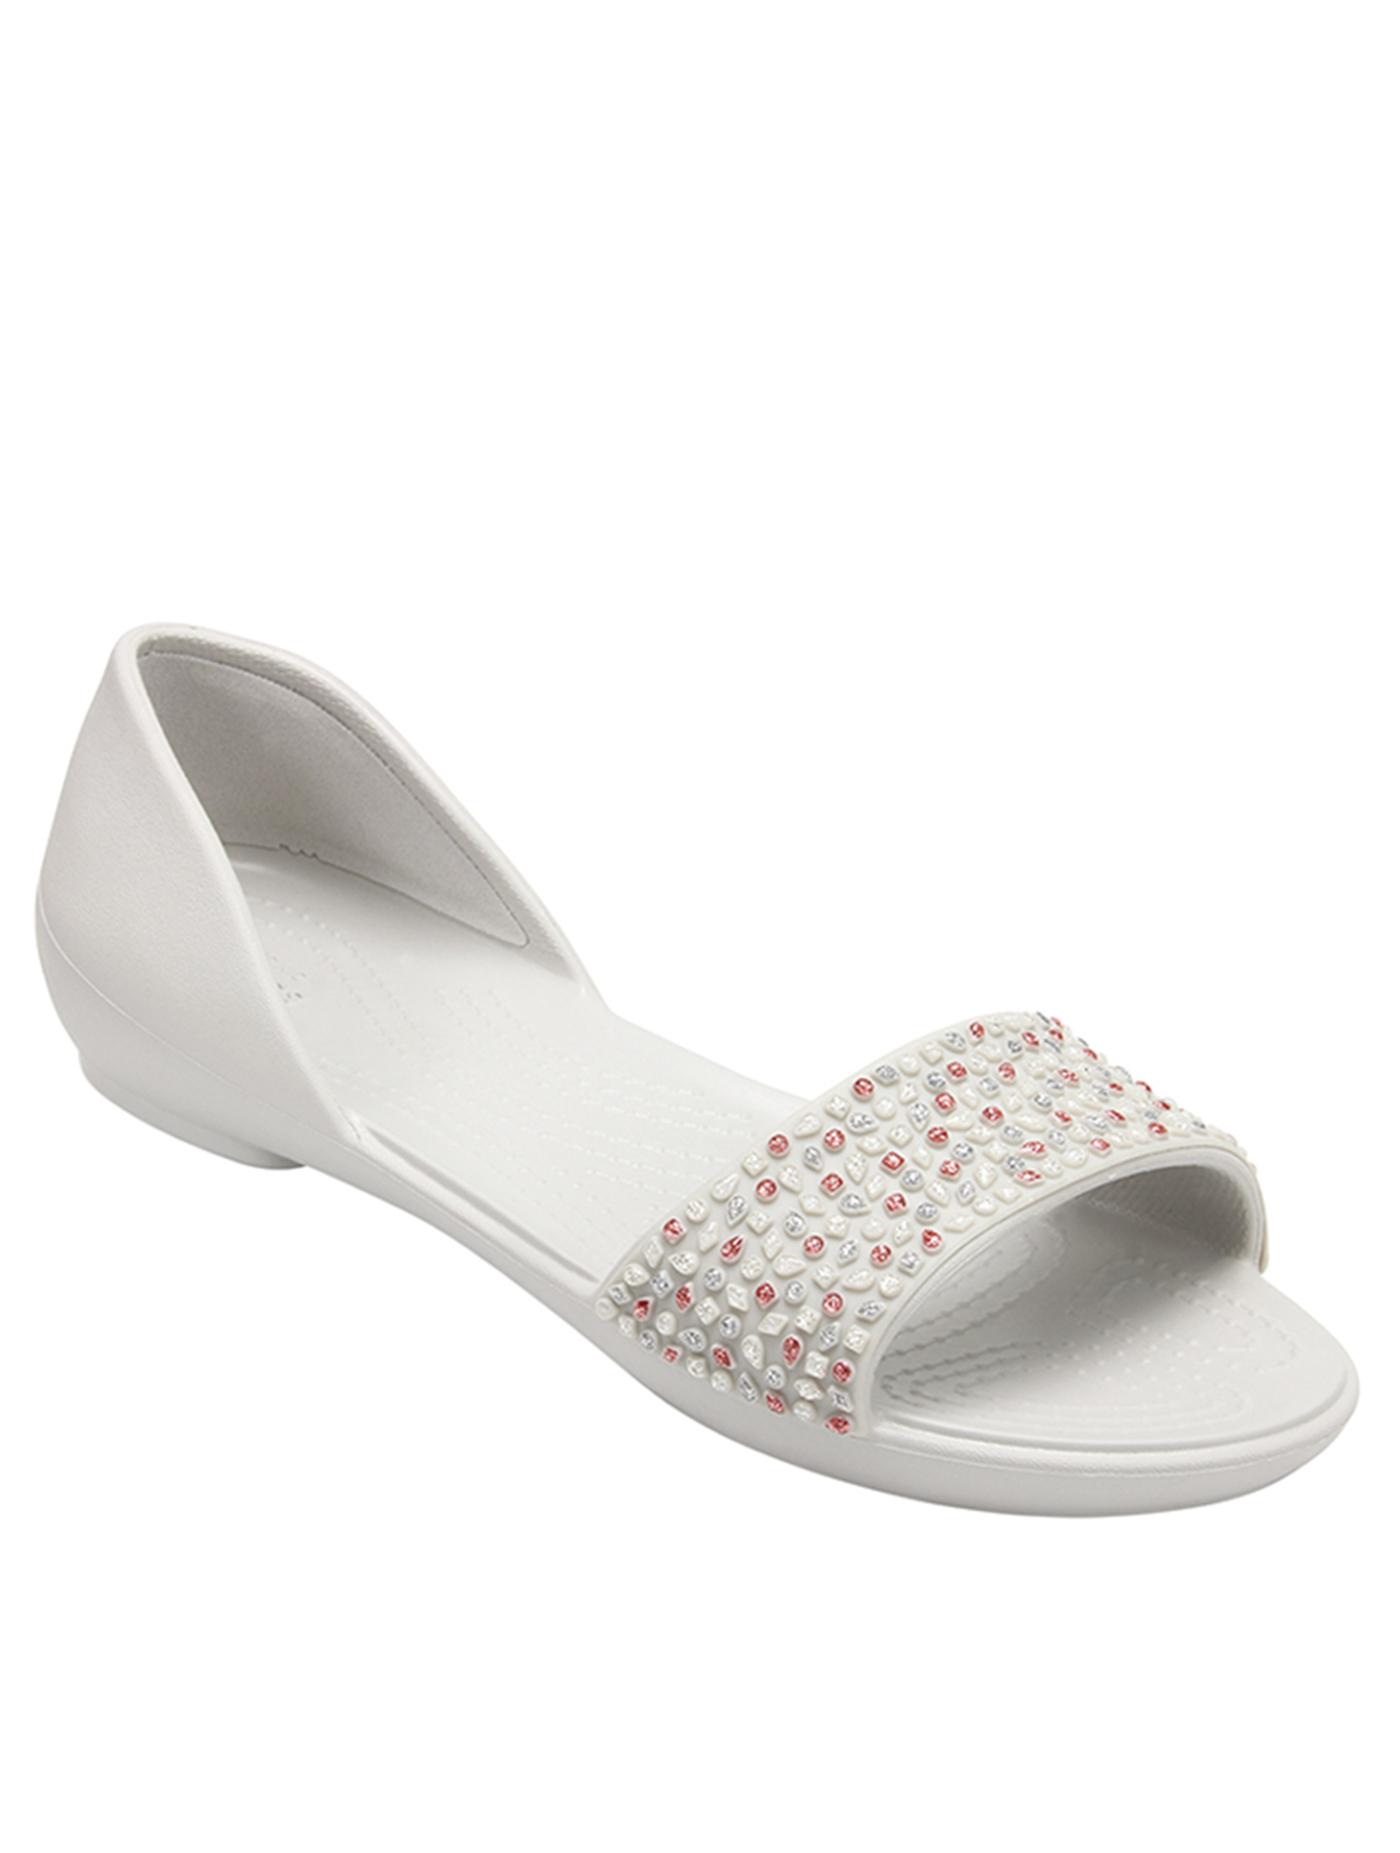 ส่งเร็ว | CROCS รองเท้าลำลองสำหรับผู้หญิง รุ่น Lina Embellished Dorsay ไซส์ W5 สี Pearl White-Rose Gold